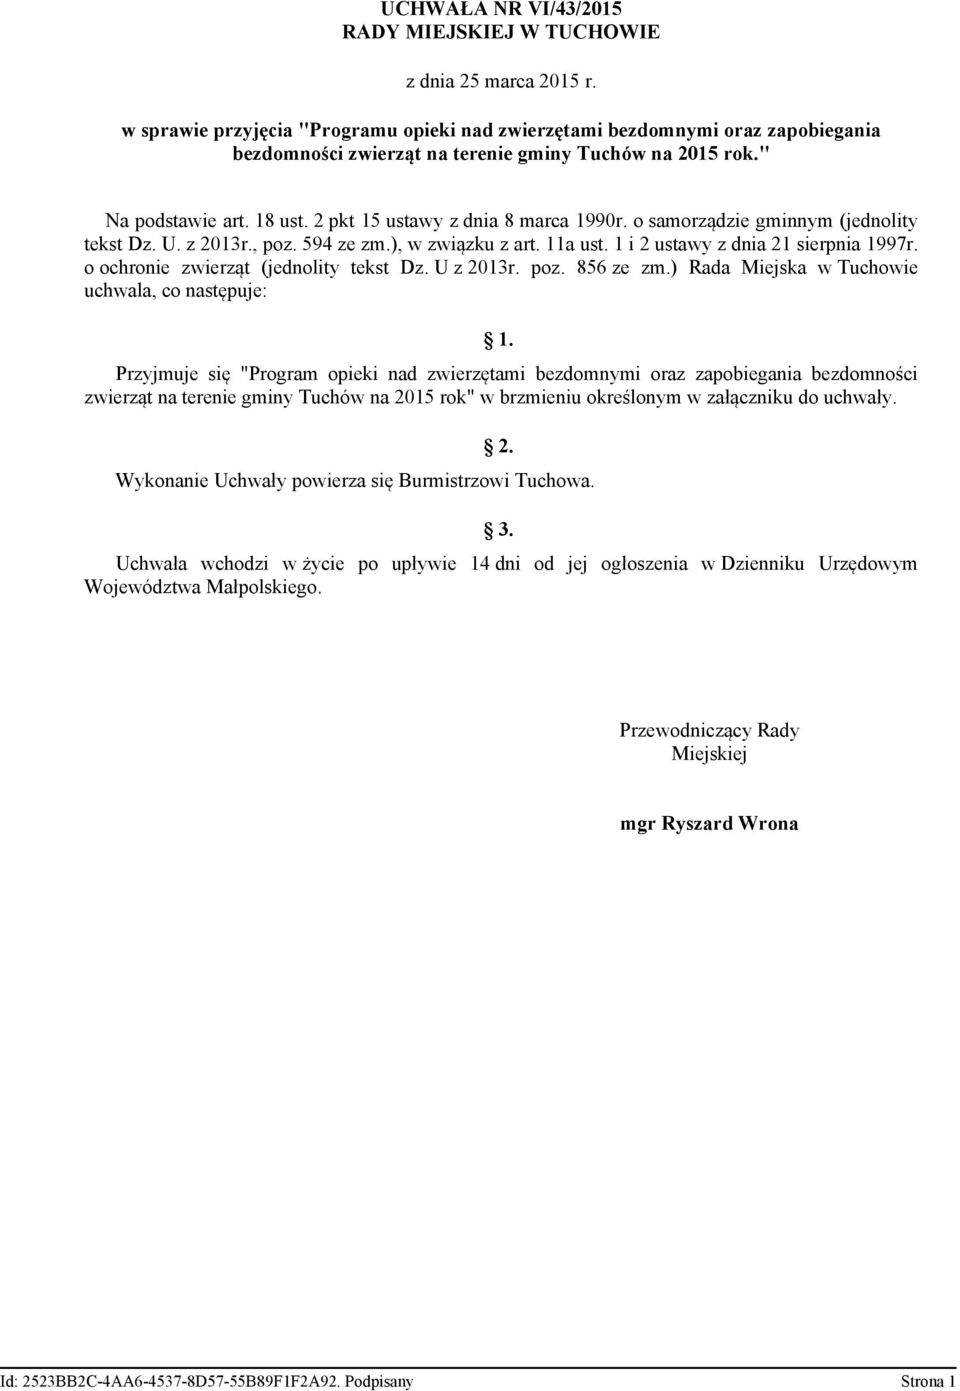 2 pkt 15 ustawy z dnia 8 marca 1990r. o samorządzie gminnym (jednolity tekst Dz. U. z 2013r., poz. 594 ze zm.), w związku z art. 11a ust. 1 i 2 ustawy z dnia 21 sierpnia 1997r.